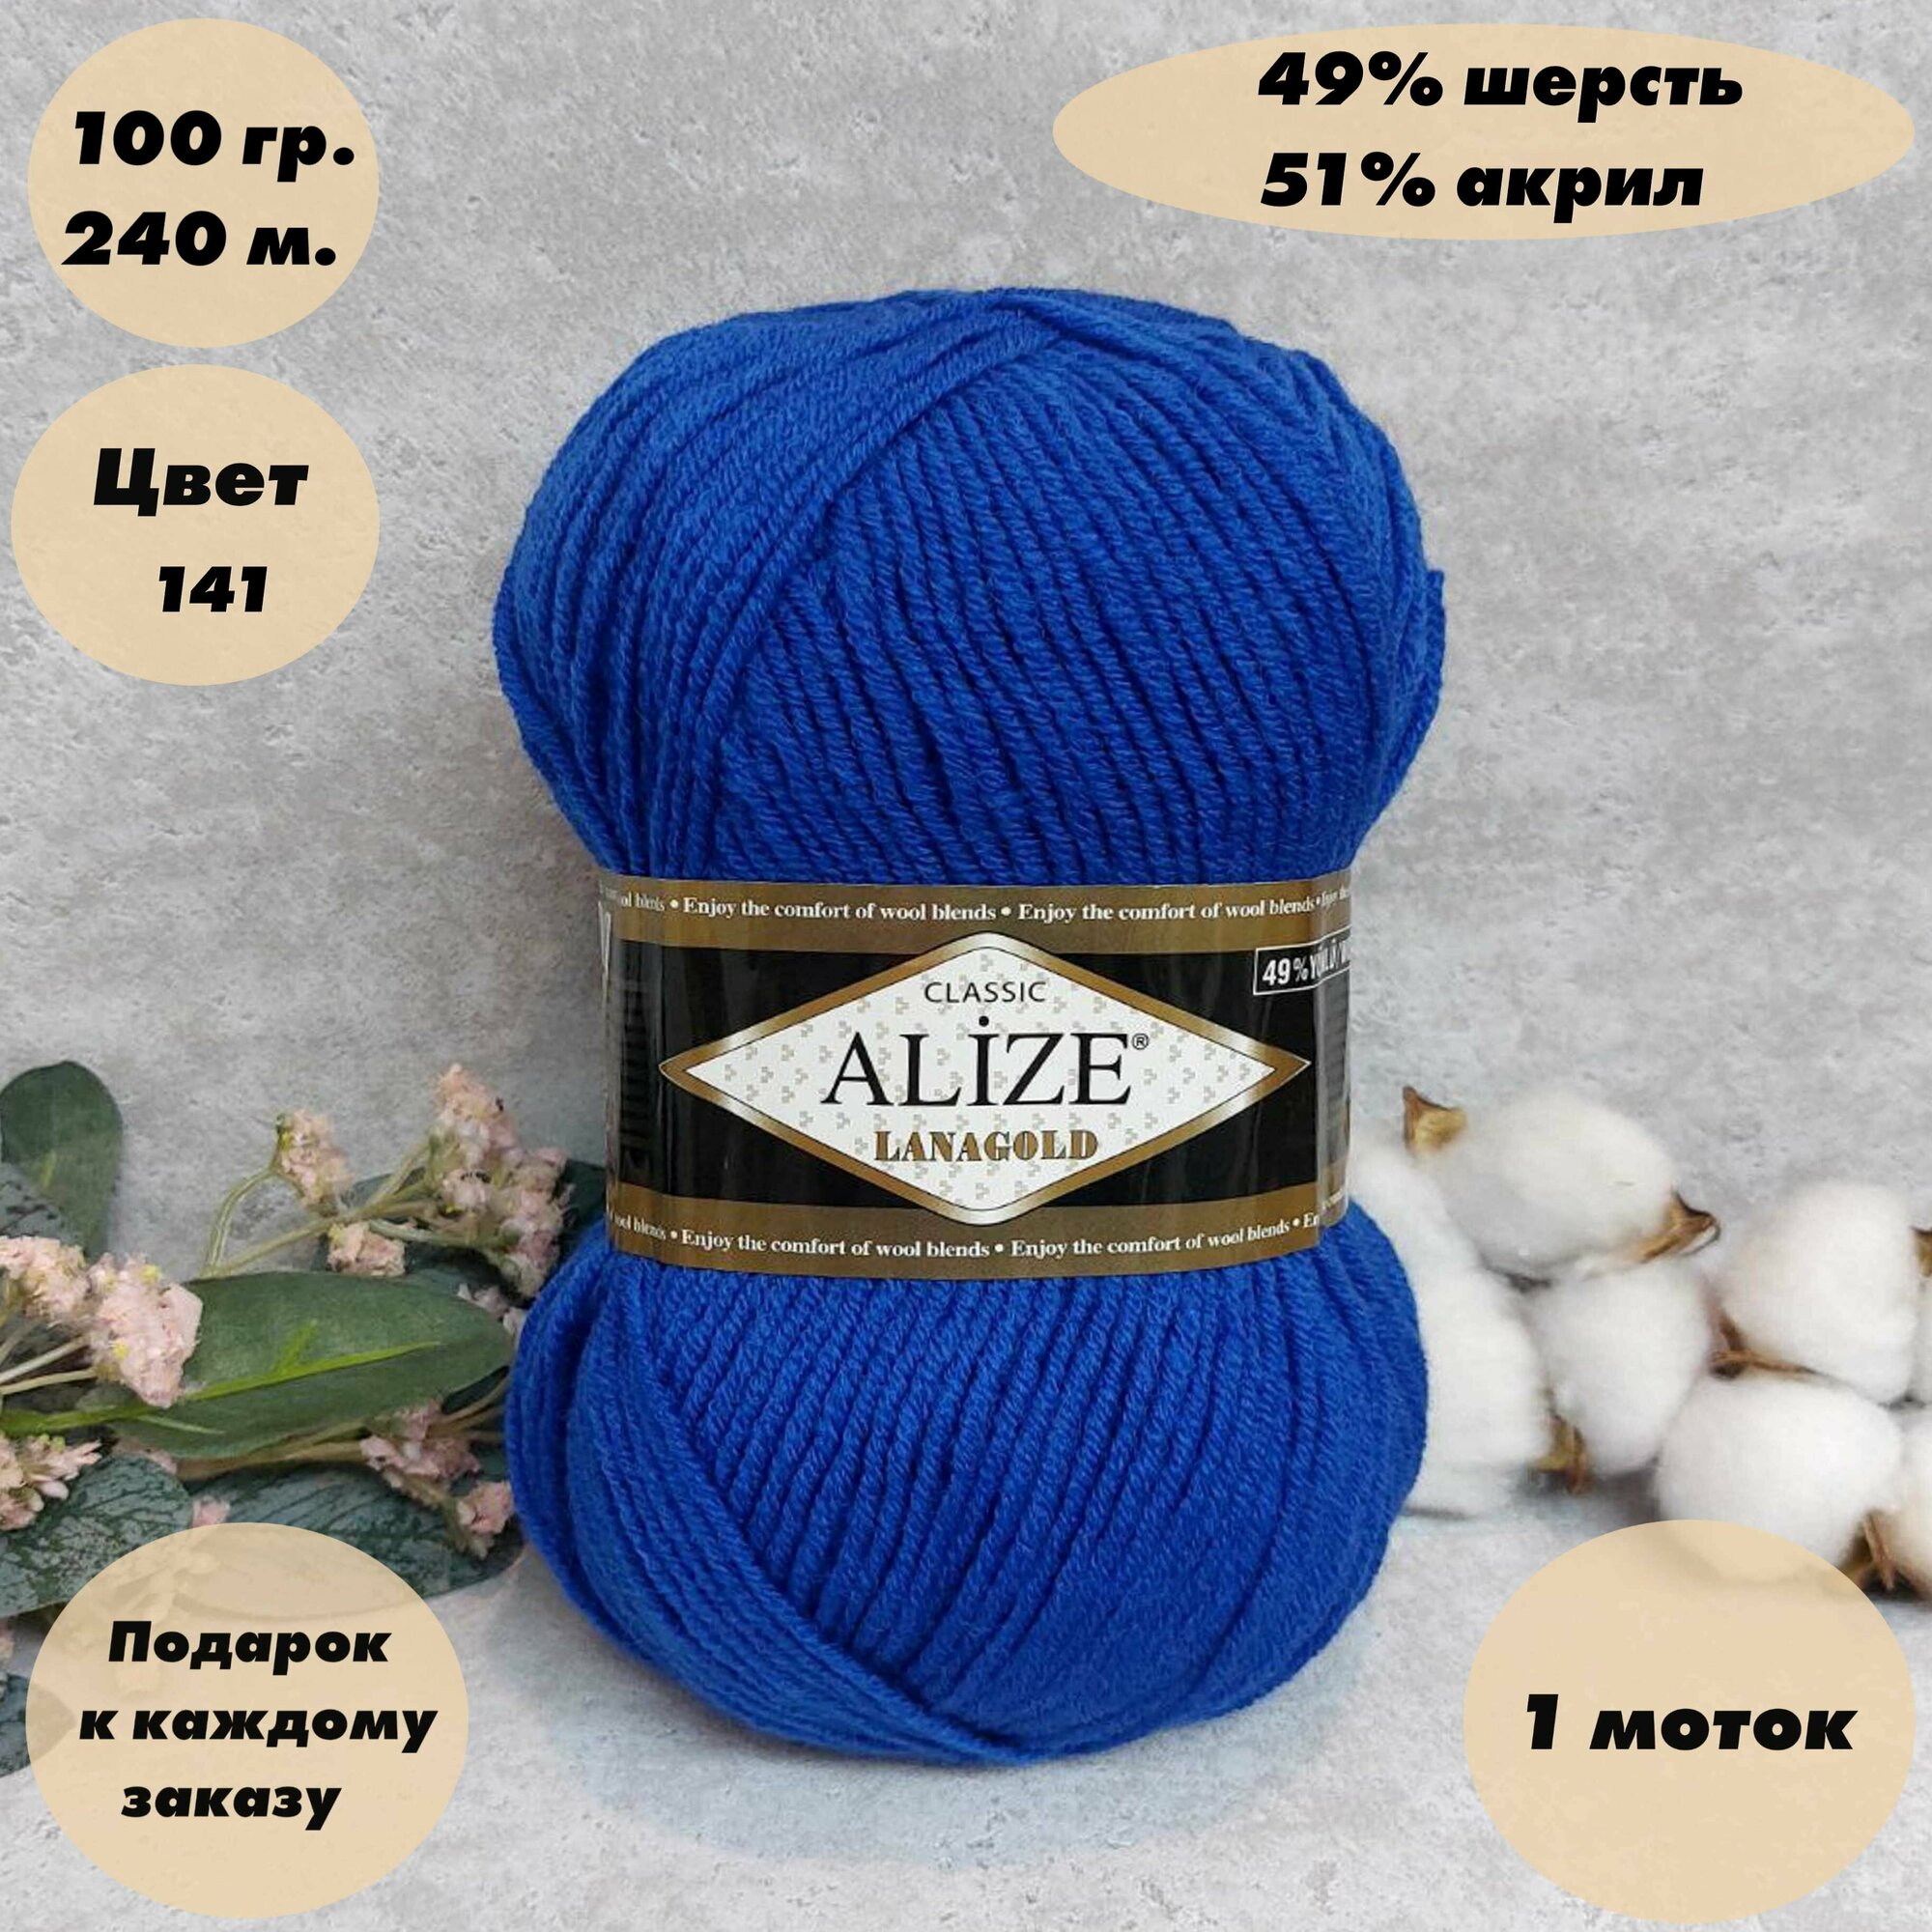 Пряжа для вязания Alize Lanagold (Ализе ланаголд) 1 моток, Цвет: Сапфир (141), 49% шерсть 51% акрил, 100 г 100 м